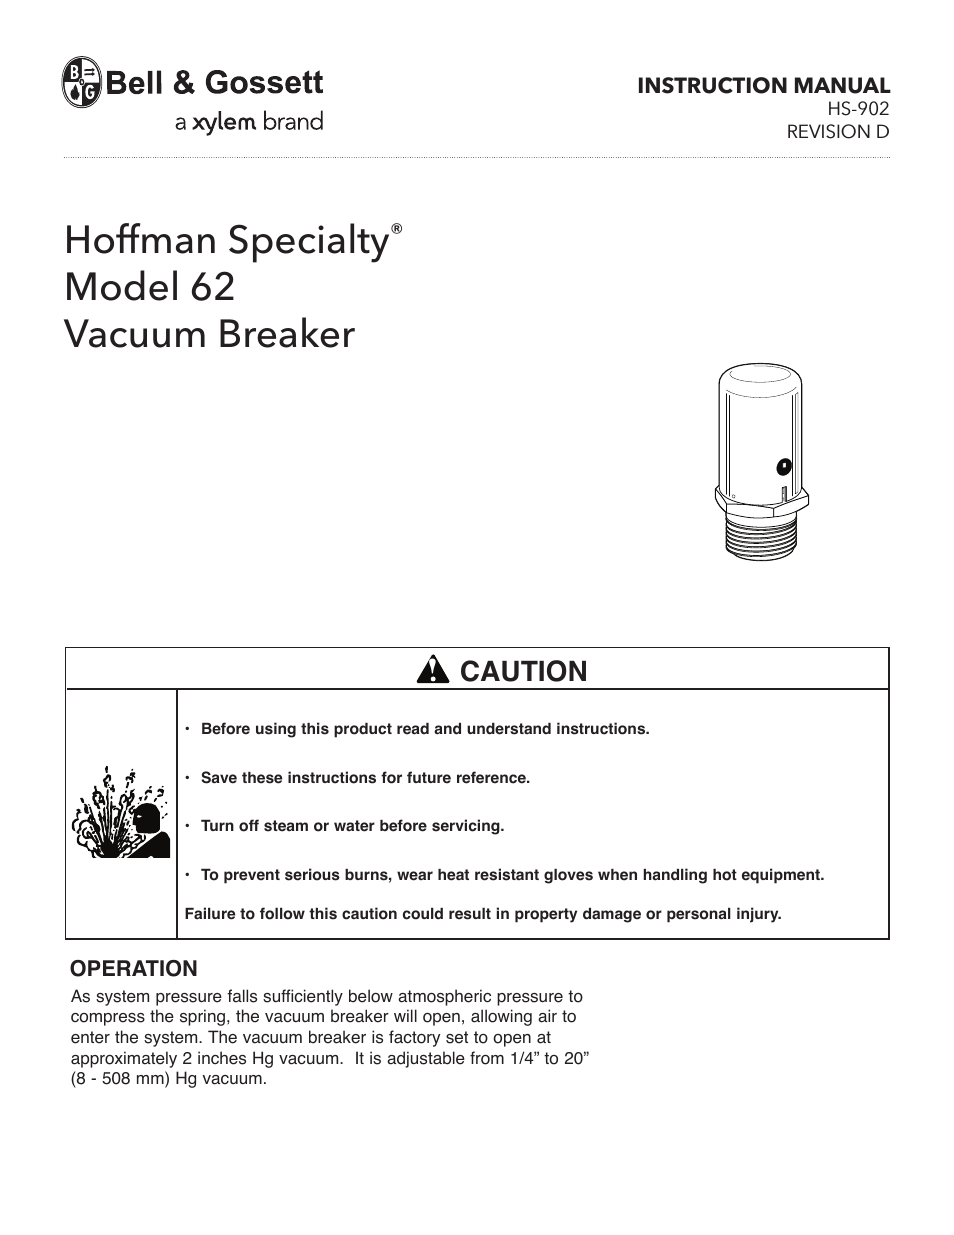 HS 902D Model 62 Vacuum Breaker